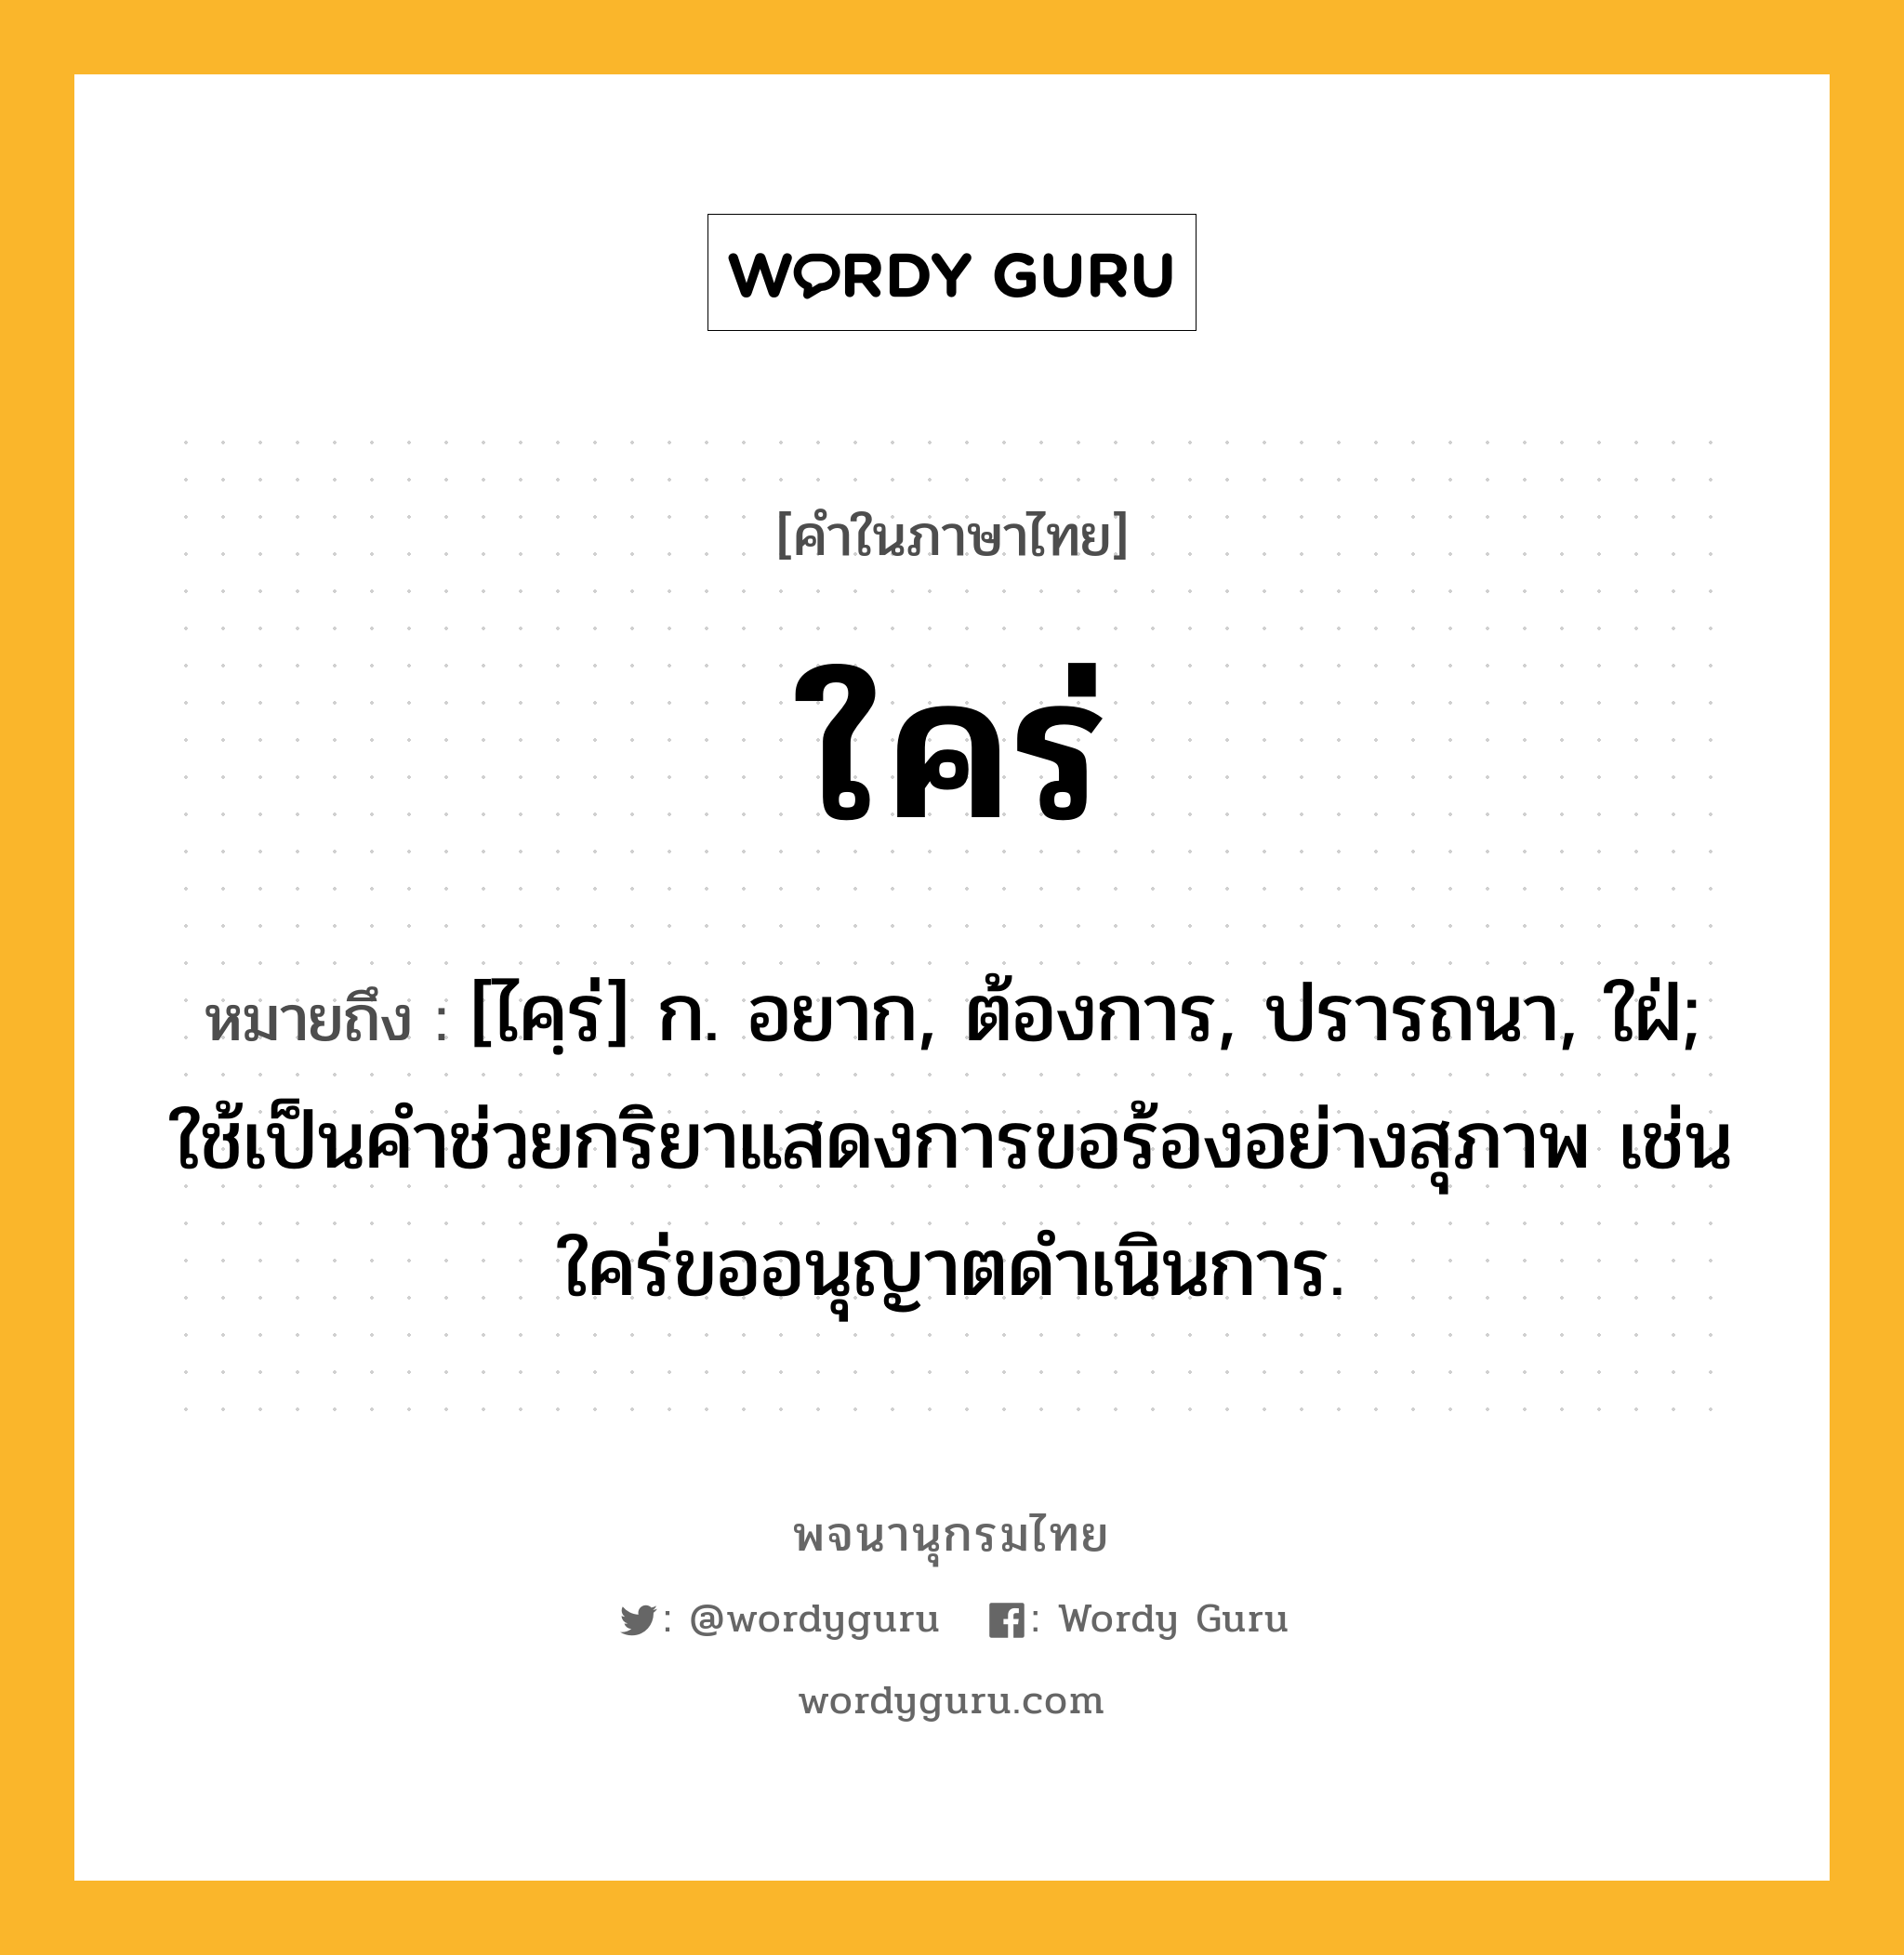 ใคร่ หมายถึงอะไร?, คำในภาษาไทย ใคร่ หมายถึง [ไคฺร่] ก. อยาก, ต้องการ, ปรารถนา, ใฝ่; ใช้เป็นคำช่วยกริยาแสดงการขอร้องอย่างสุภาพ เช่น ใคร่ขออนุญาตดำเนินการ.